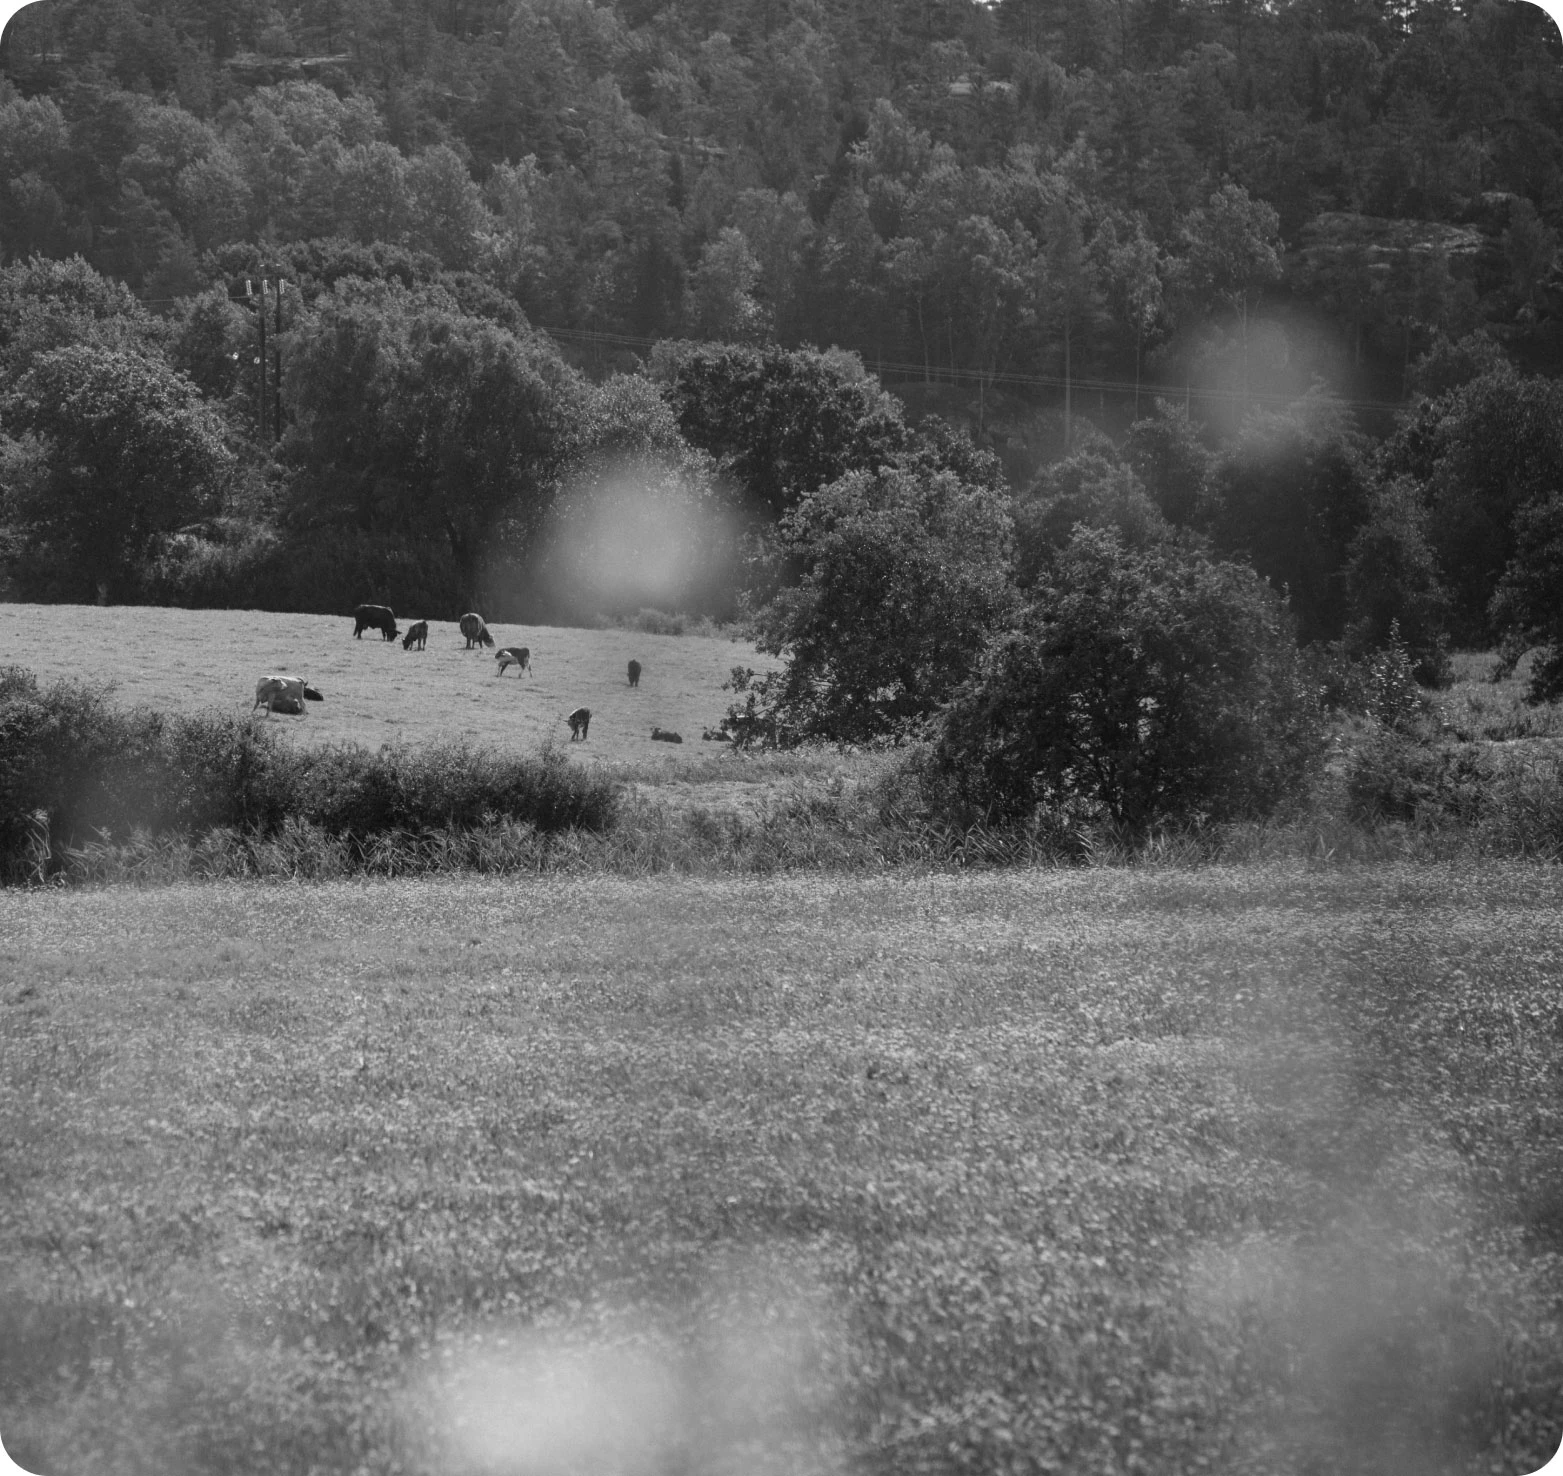 Öppet landskap med kor som betar på gräs